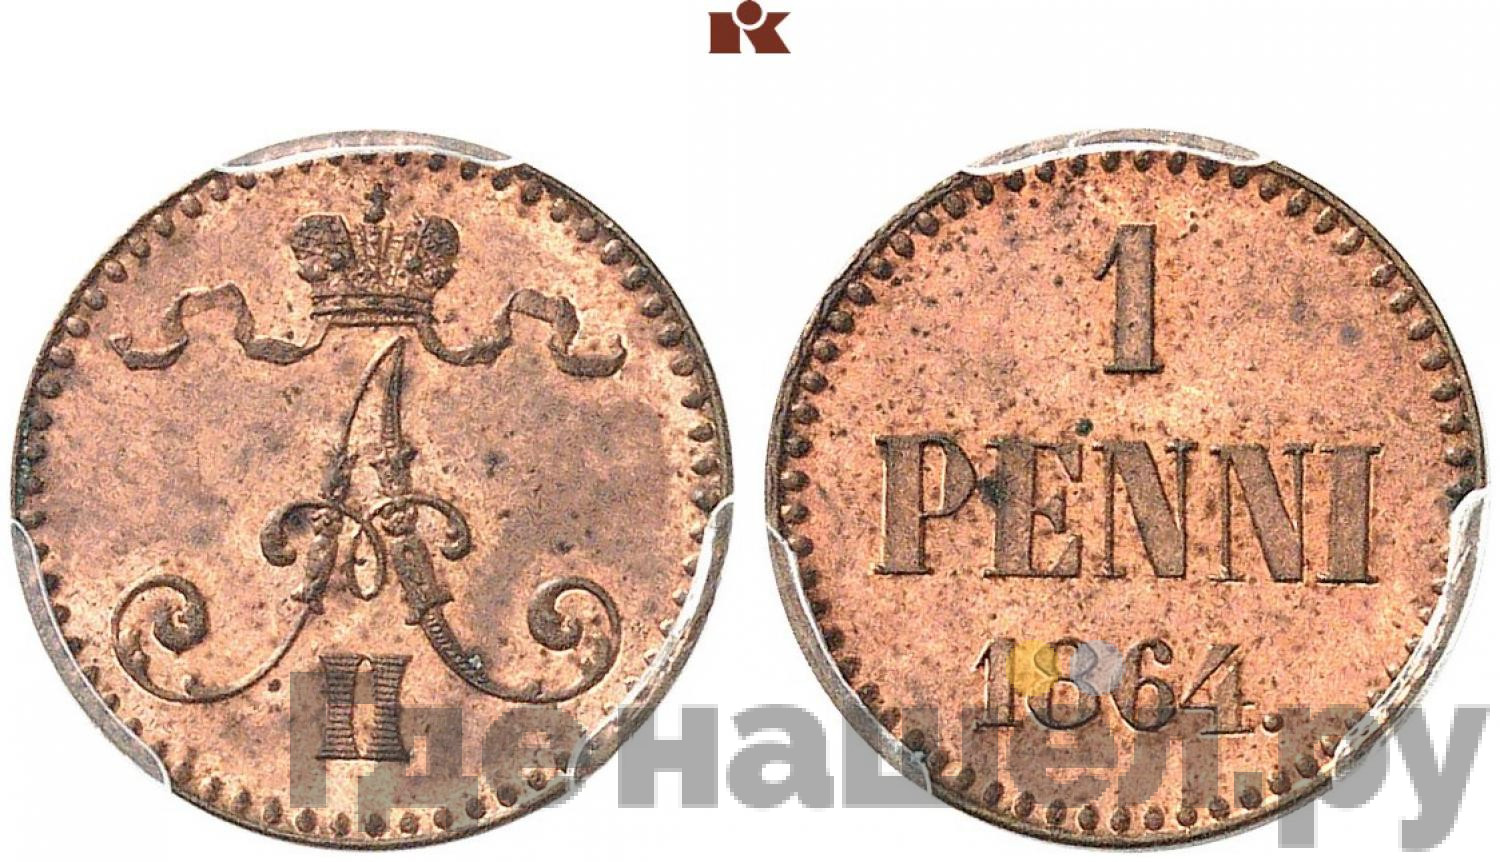 1 пенни 1864 года Для Финляндии